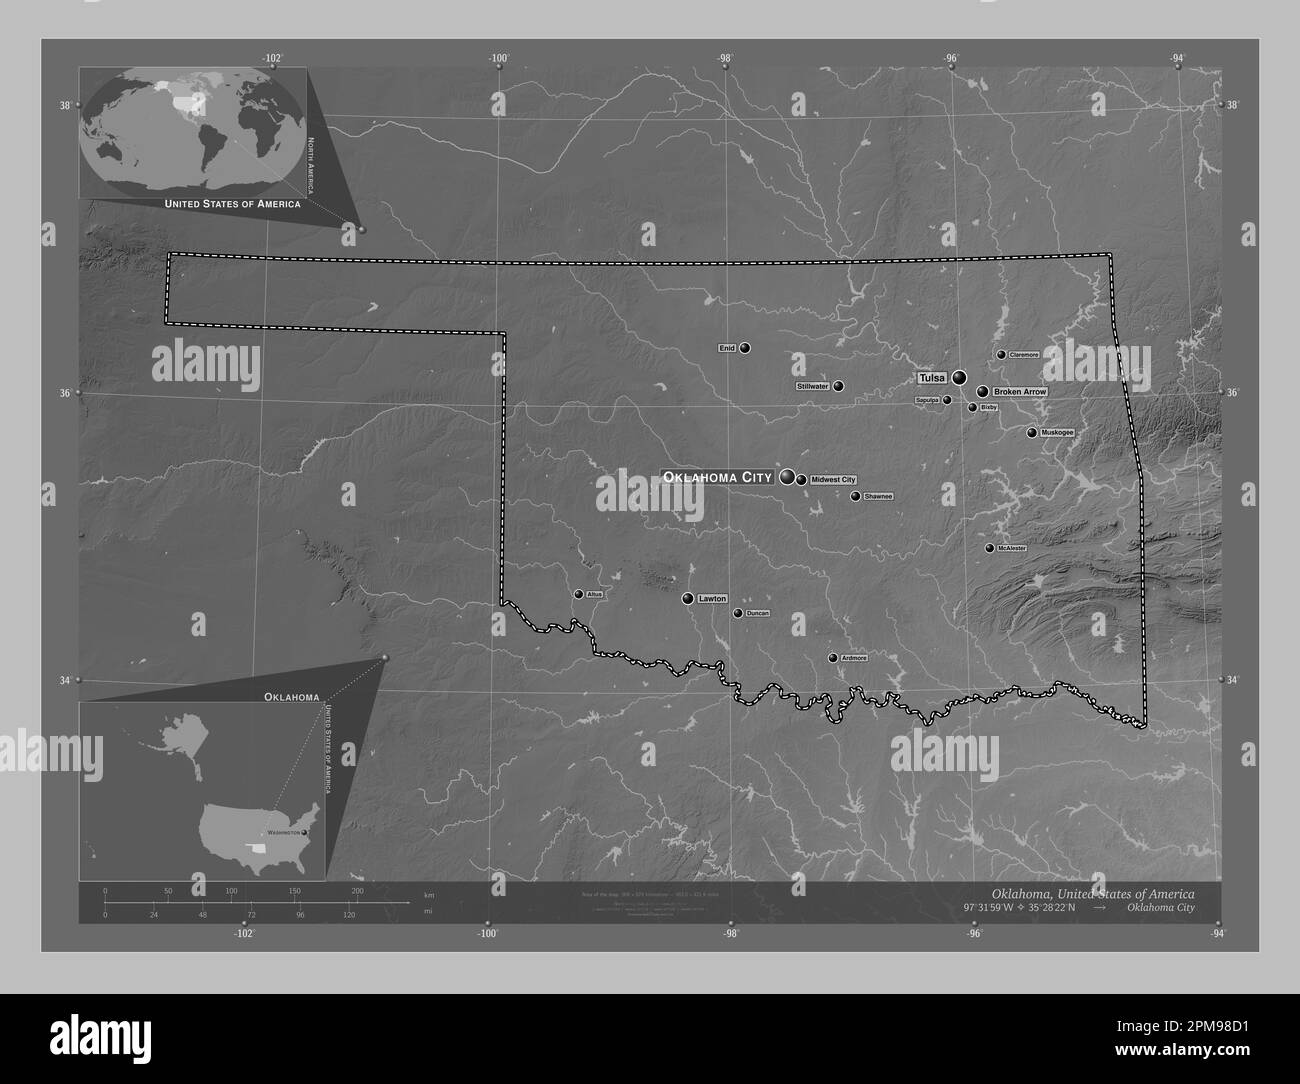 Oklahoma, stato degli Stati Uniti d'America. Mappa in scala di grigi con laghi e fiumi. Località e nomi delle principali città della regione. Angolo Foto Stock